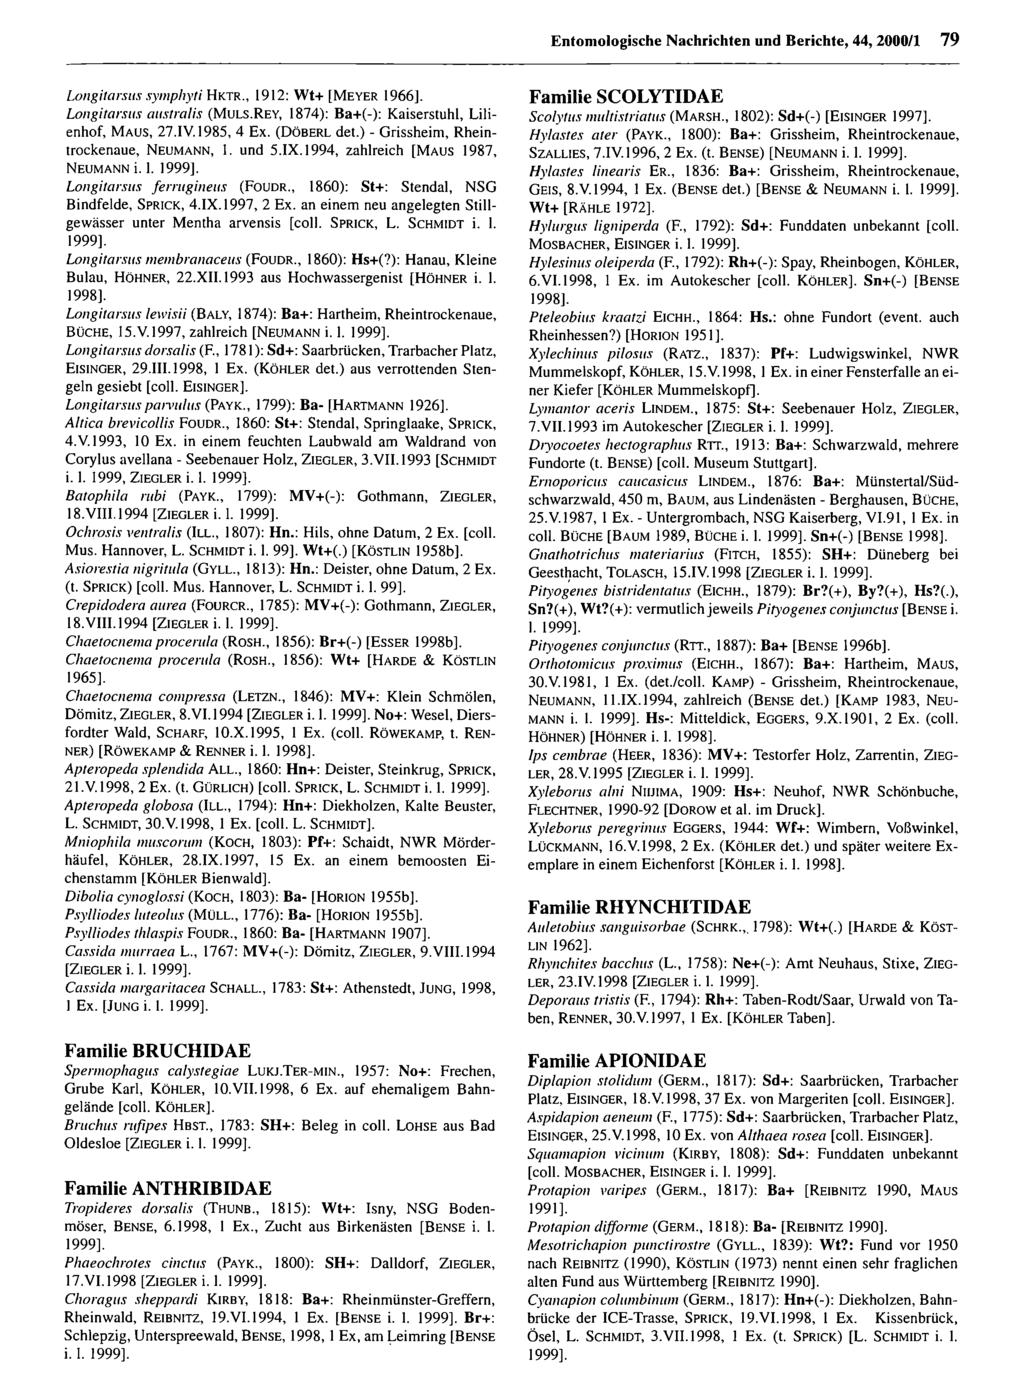 Entomologische Nachrichten und Berichte; download Entomologische unter www.biologiezentrum.at Nachrichten und Berichte, 44, 2000/1 79 Longitarsus symphyti Hk.tr., 1912: W t+ [M e y e r 1966].